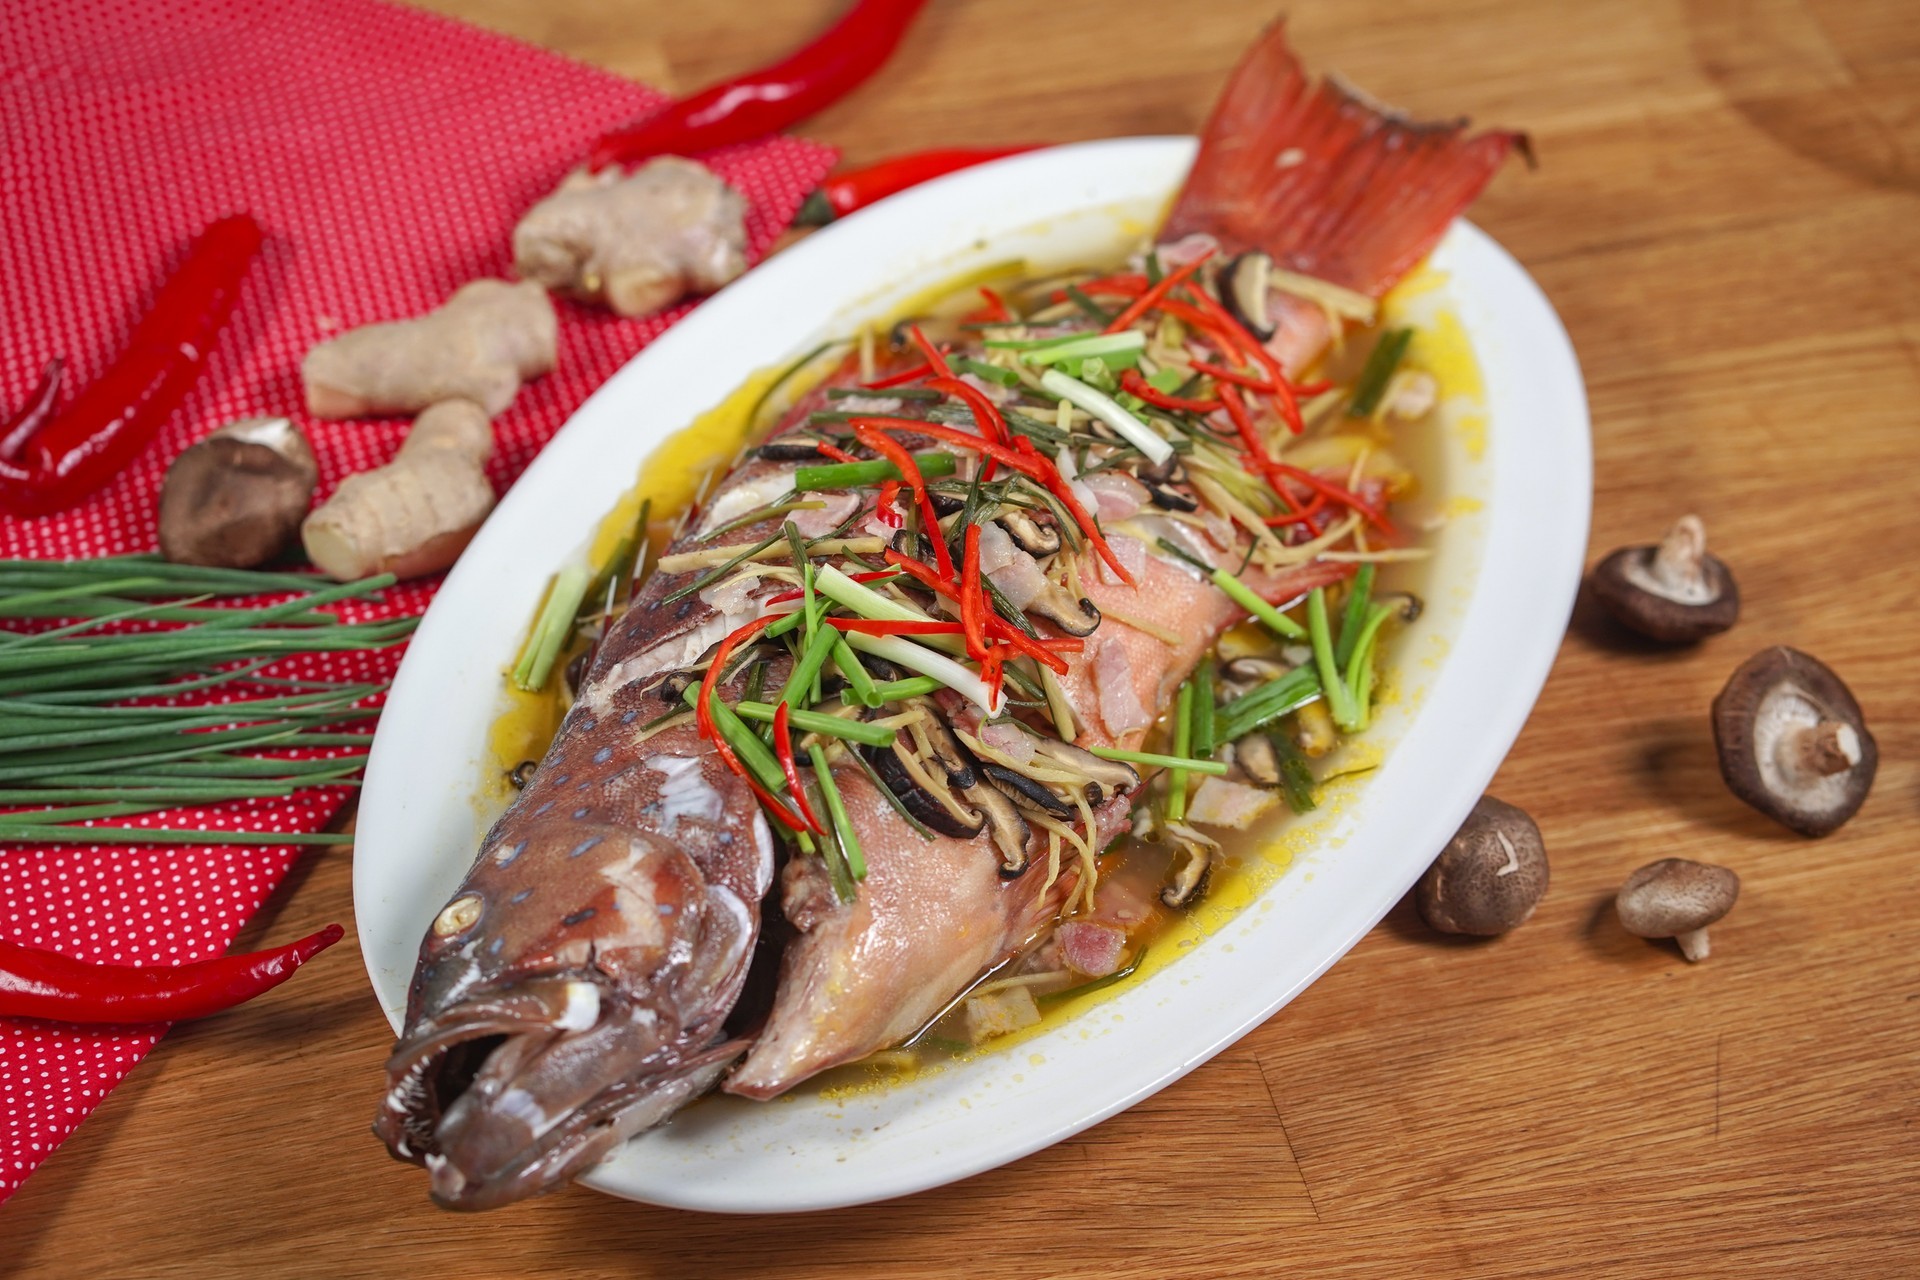 25 สูตร “เมนูปลา” ไม่ว่าจะเป็นปลาชนิดไหน ก็อร่อยง่าย ๆ ไม่มีเบื่อ!